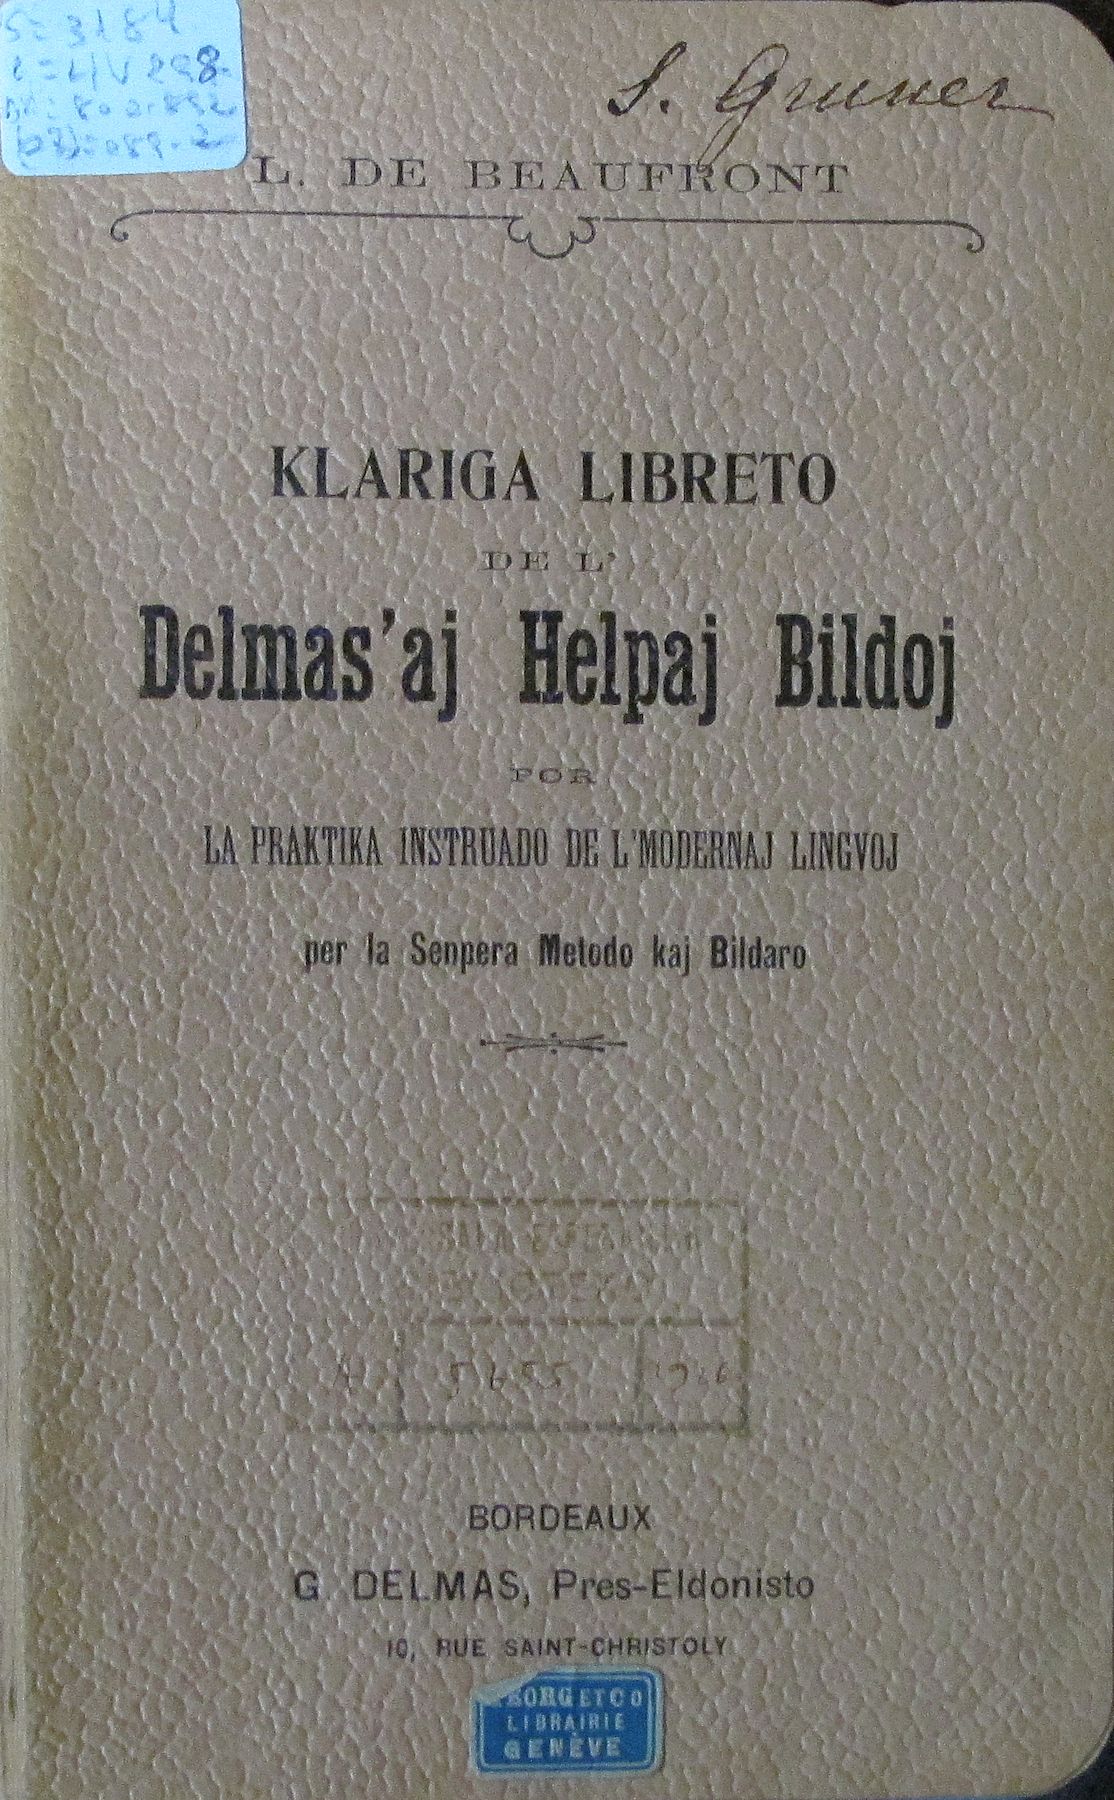 Kovrilo de <em>Klariga Libreto</em> (Fotis CIC)